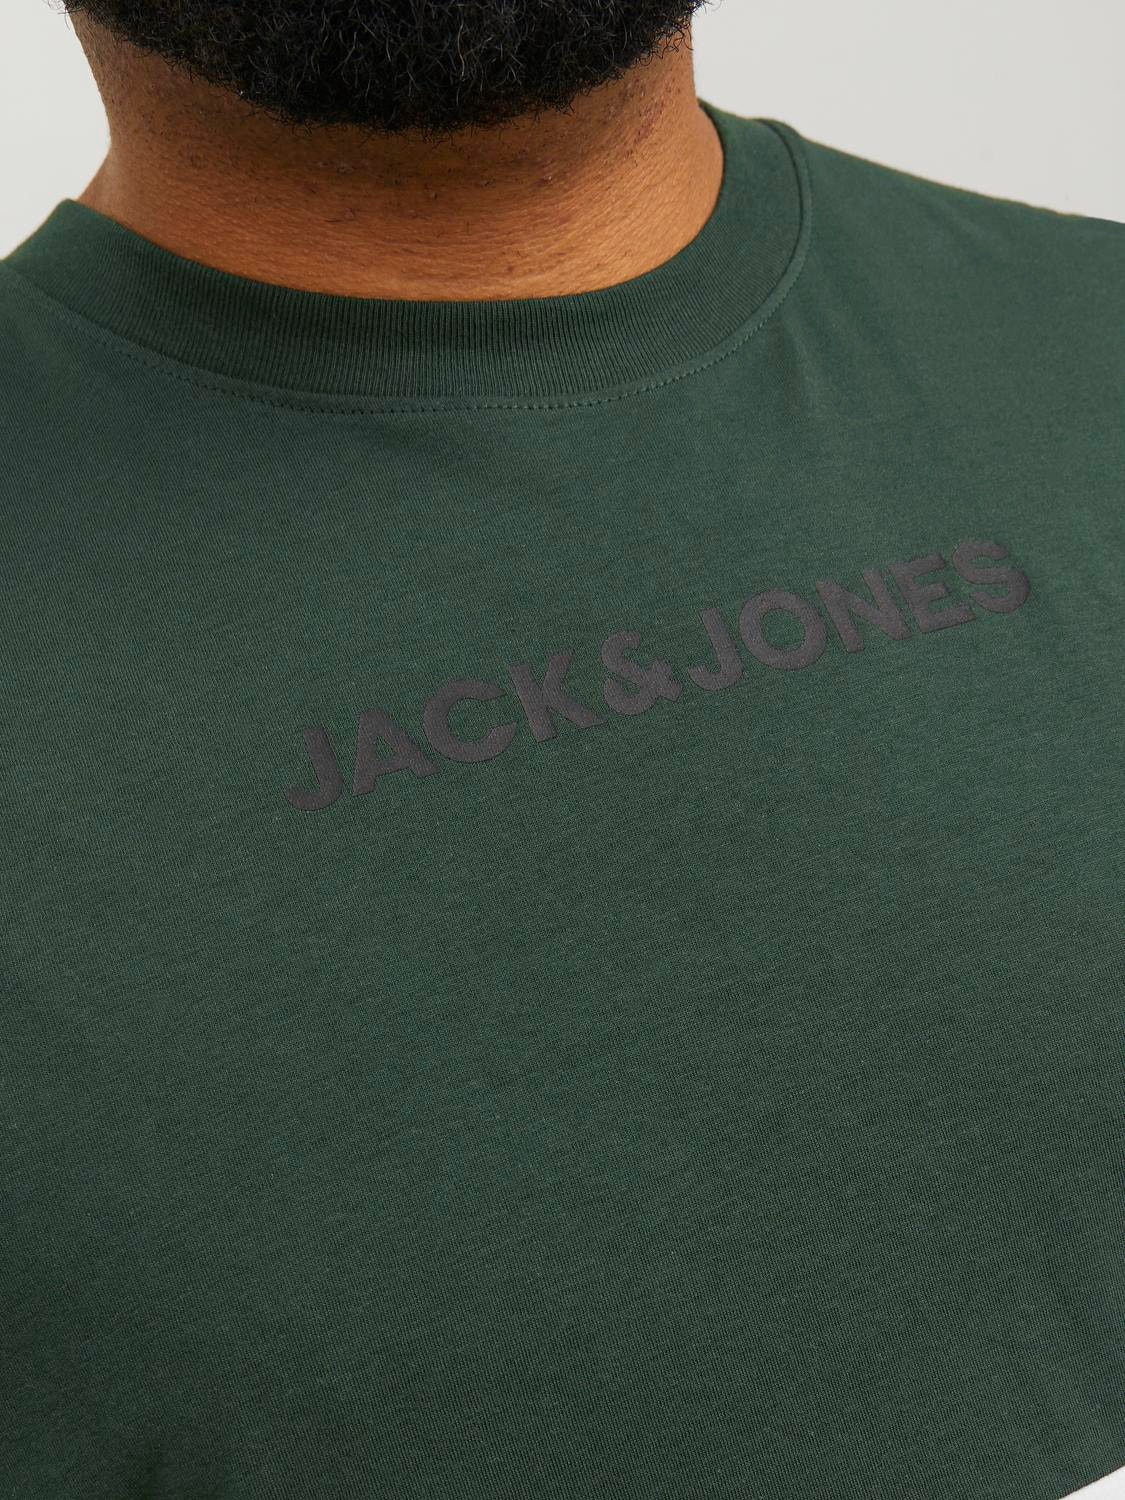 Jack & Jones Plus Size T-shirt Bloco de Cor -Mountain View - 12243653